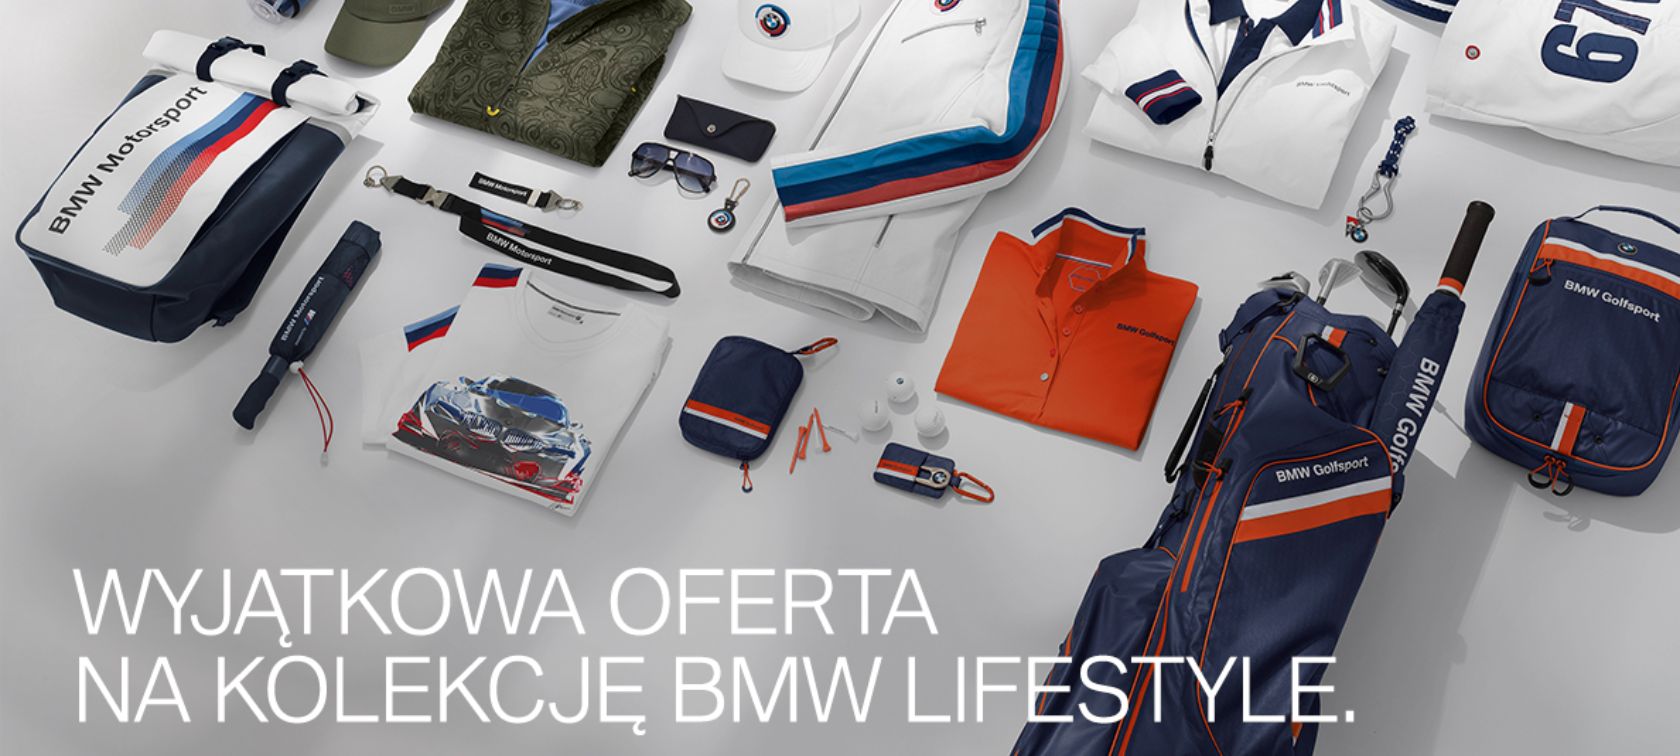 Otrzymaj rabat 15% na wszystkie akcesoria i 30% na kolekcję BMW Lifestyle dostępną w salonie